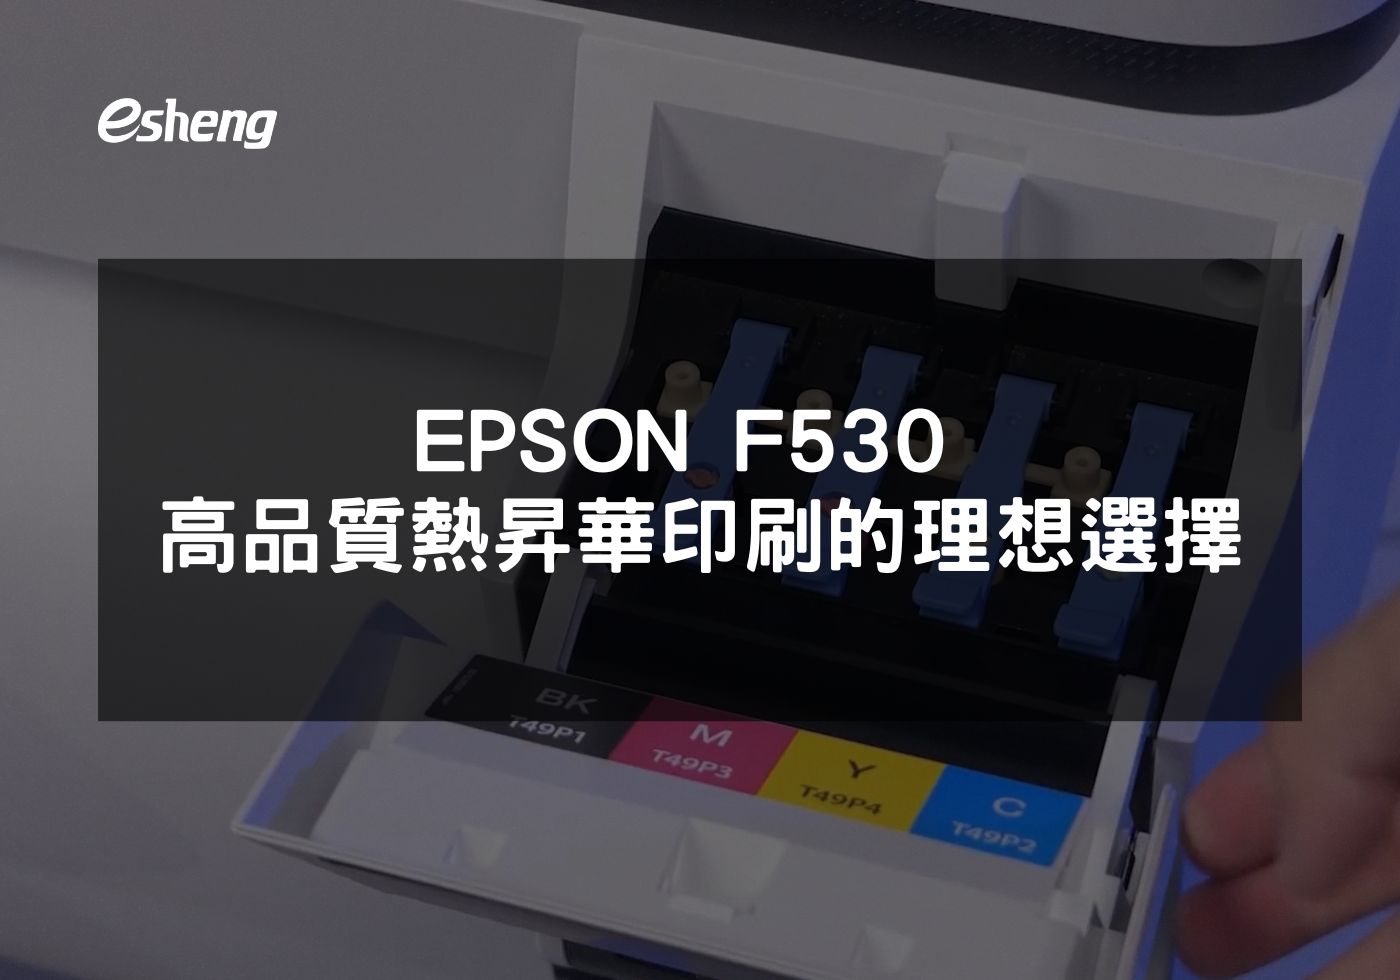 EPSON F530熱昇華印表機提升印刷效率